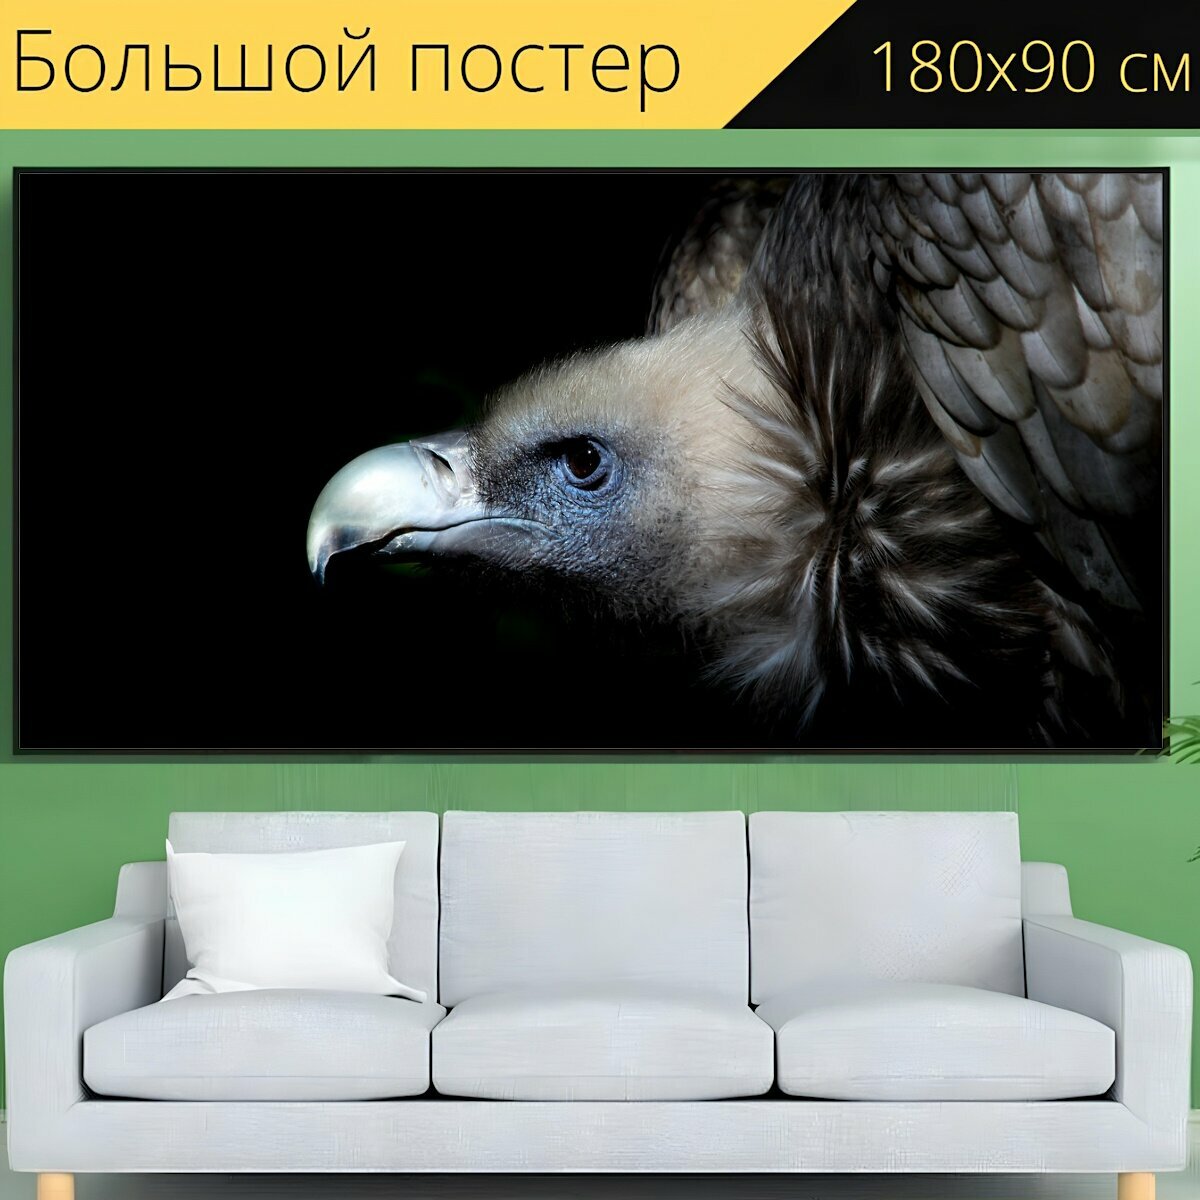 Большой постер "Гриф, стервятник, птица" 180 x 90 см. для интерьера